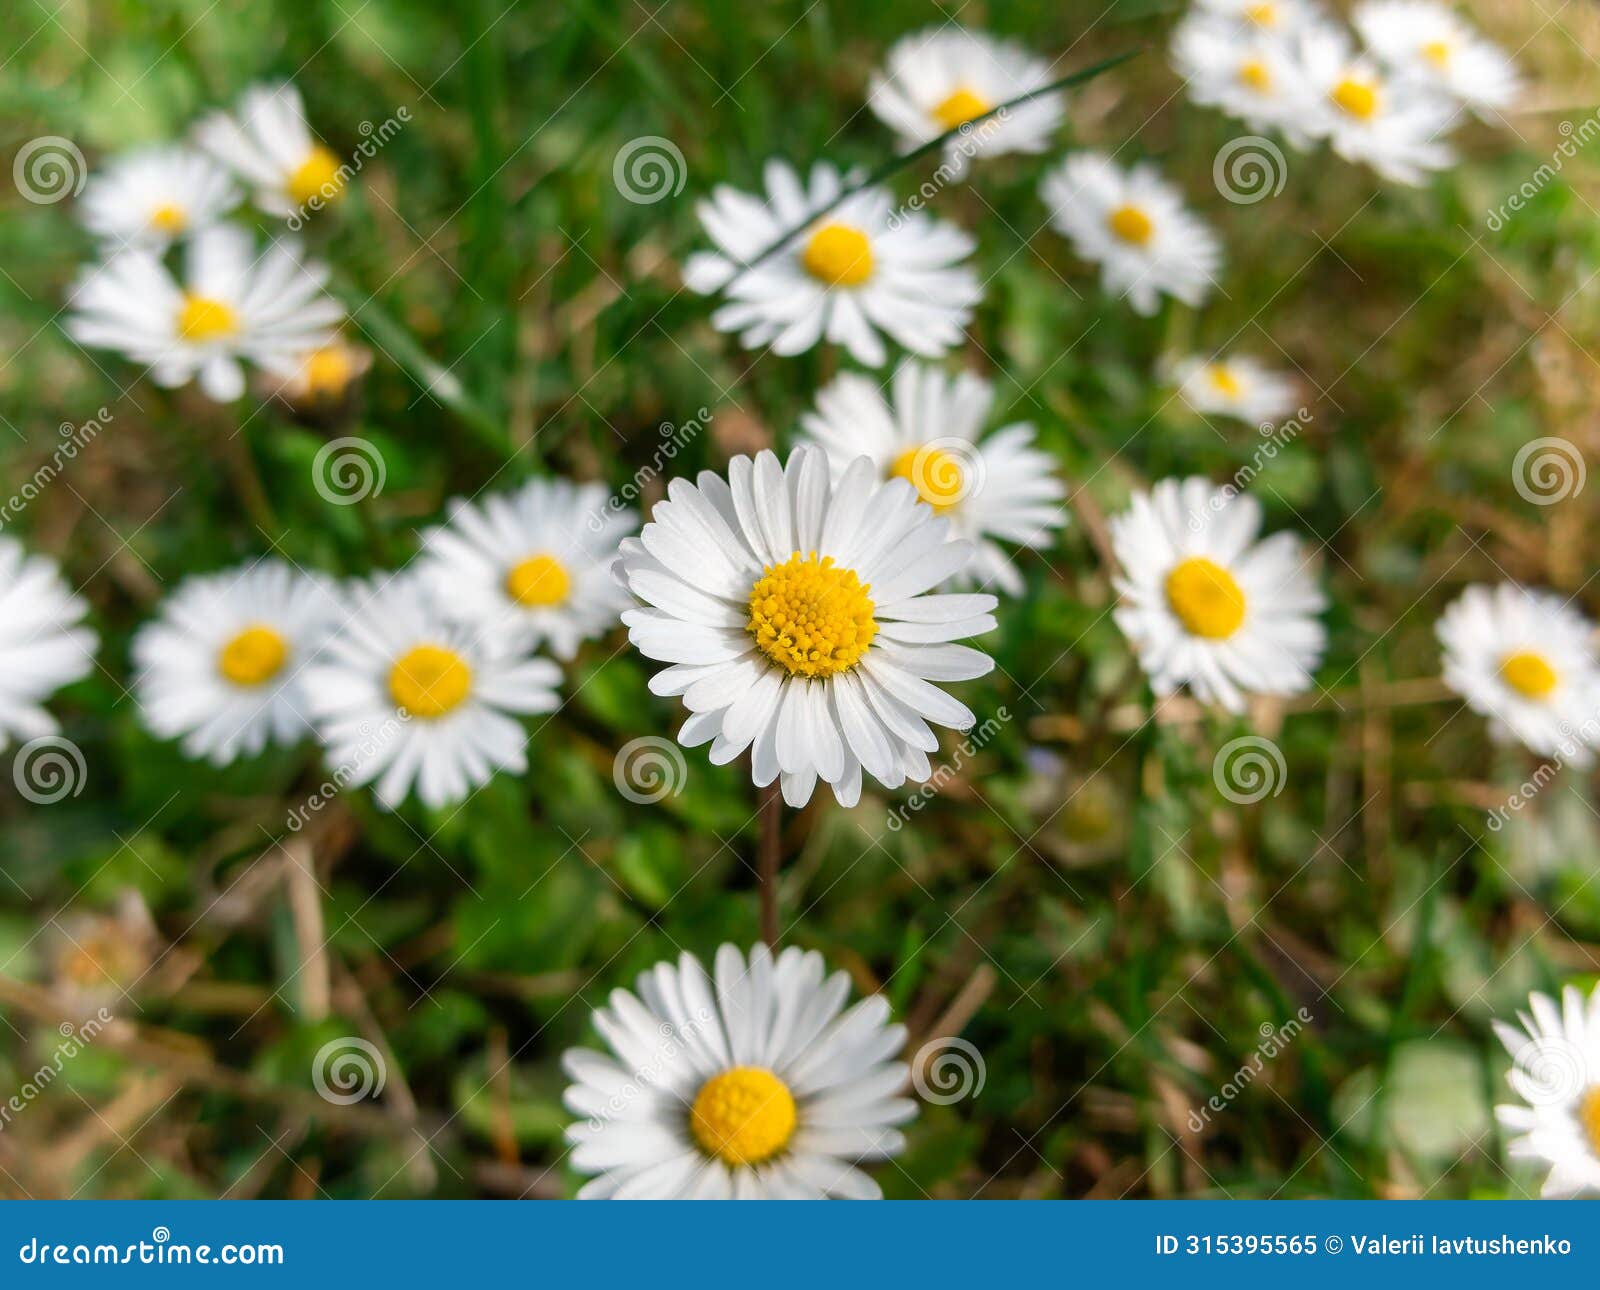 oxeye daisy flowers in bloom